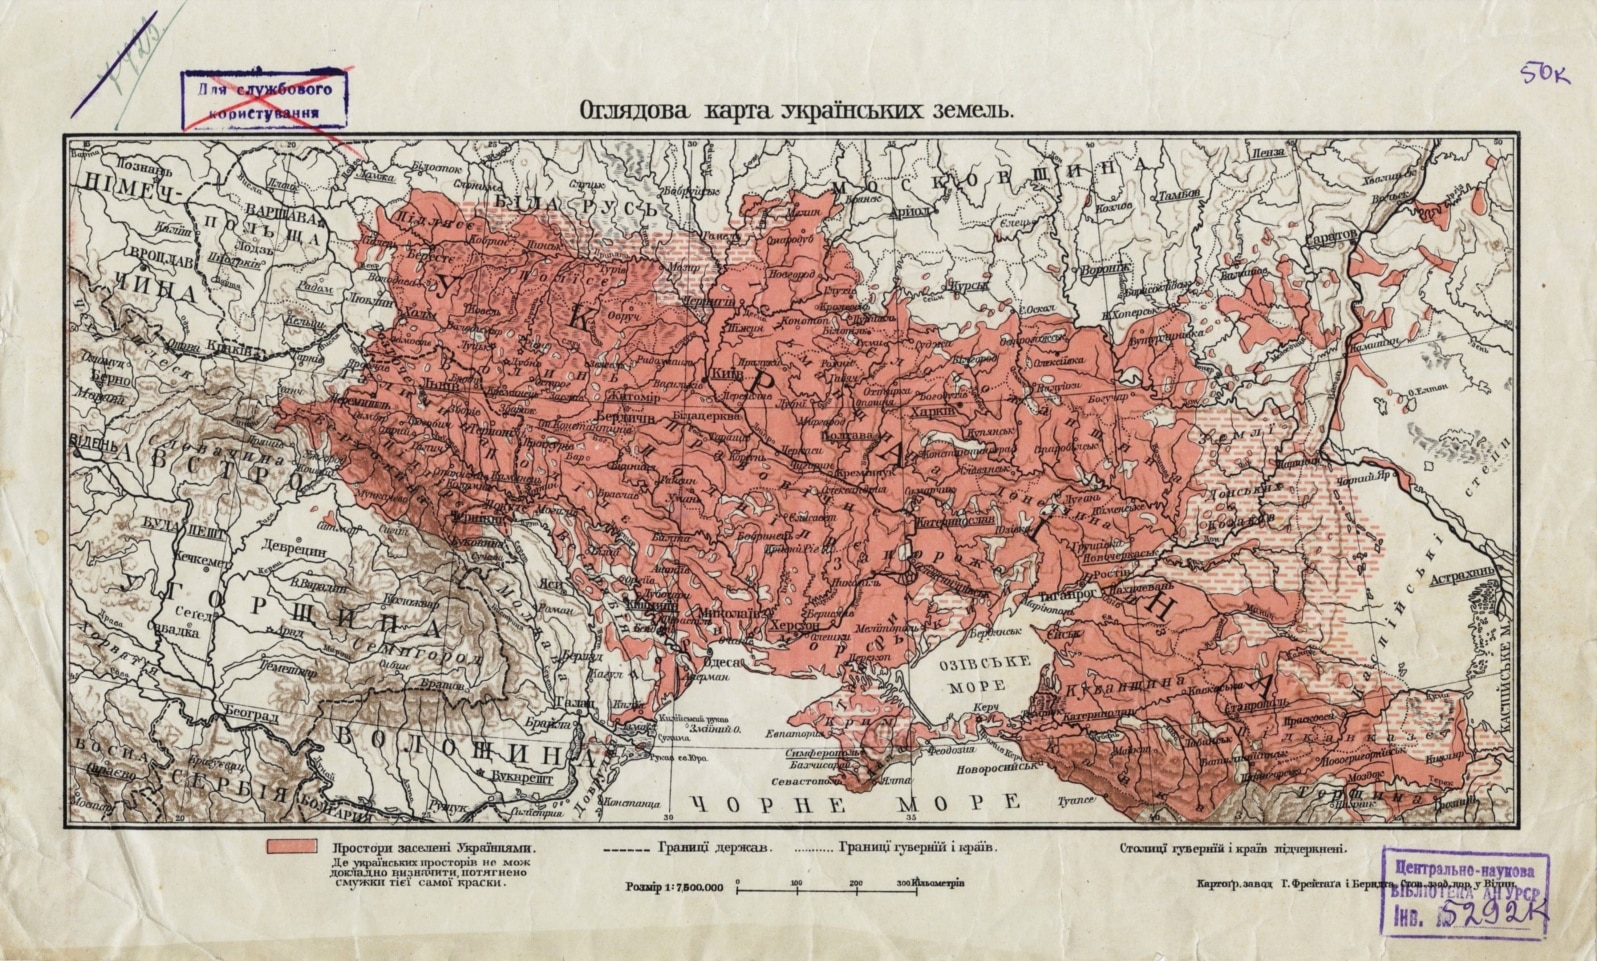 Стародубщина (у верхній частині мапи позначено місто Стародуб) на «Оглядові карті українських земель», укладеній Степаном Рудницьким (1917 рік)